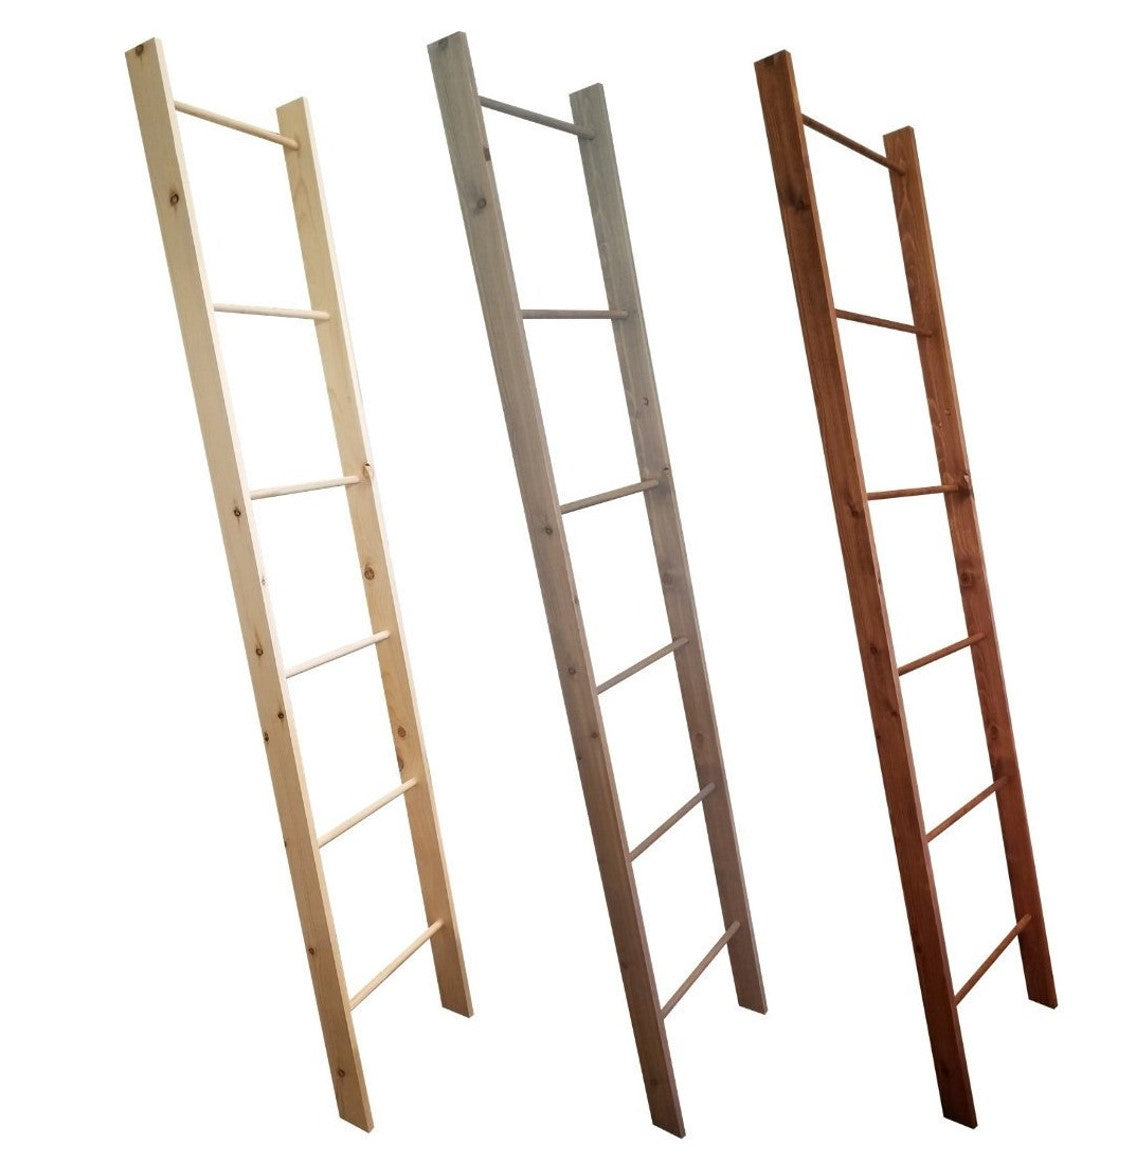 Wood Display Ladders